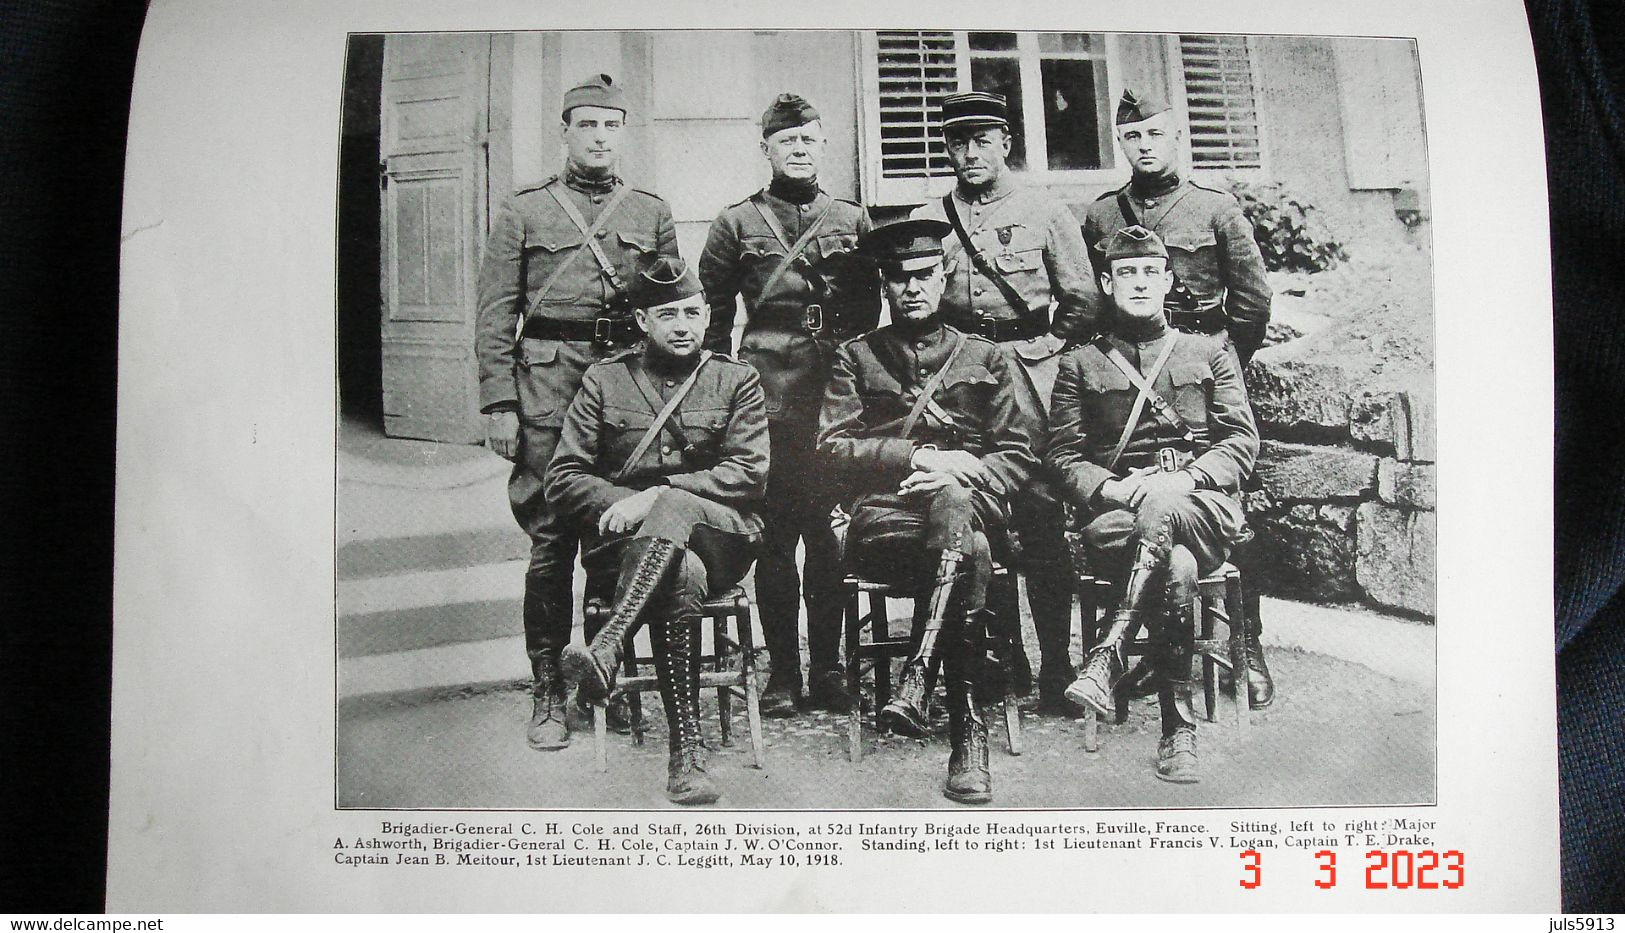 Livre "Pictorial History of the 26th Division" Américaine en France WW1 attribué a un soldat Américain Linwood C. JEWETT